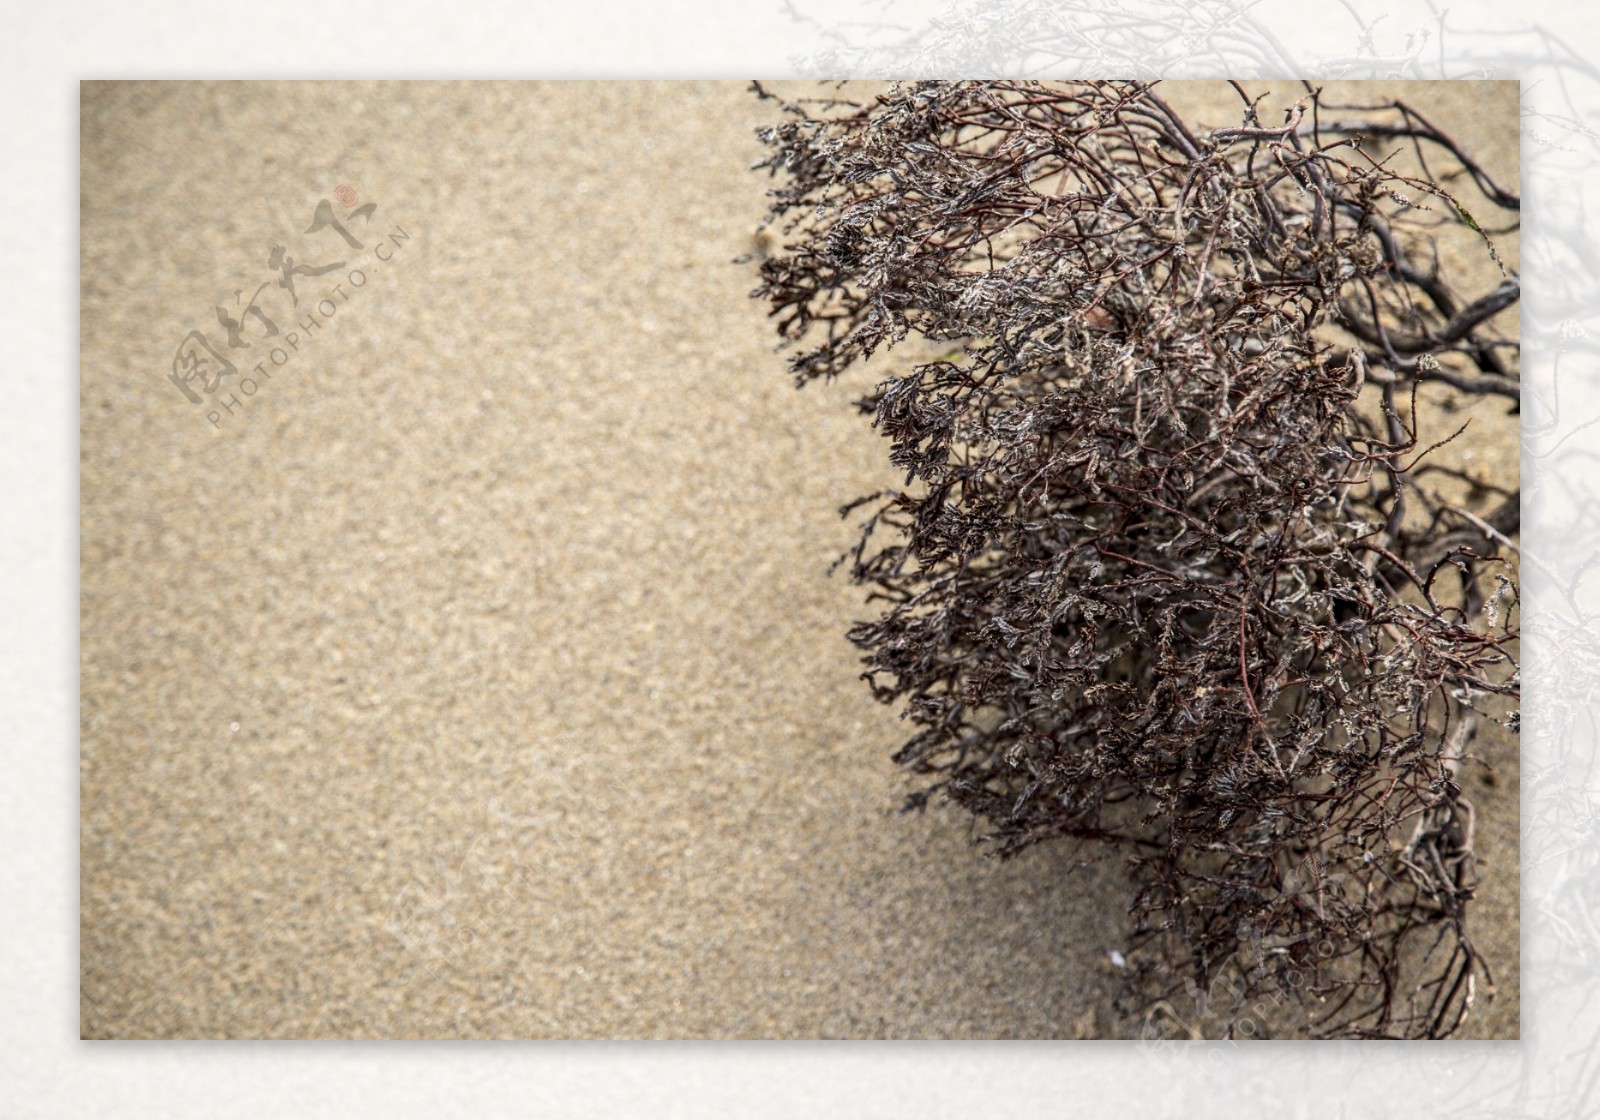 沙滩上死掉的干植物